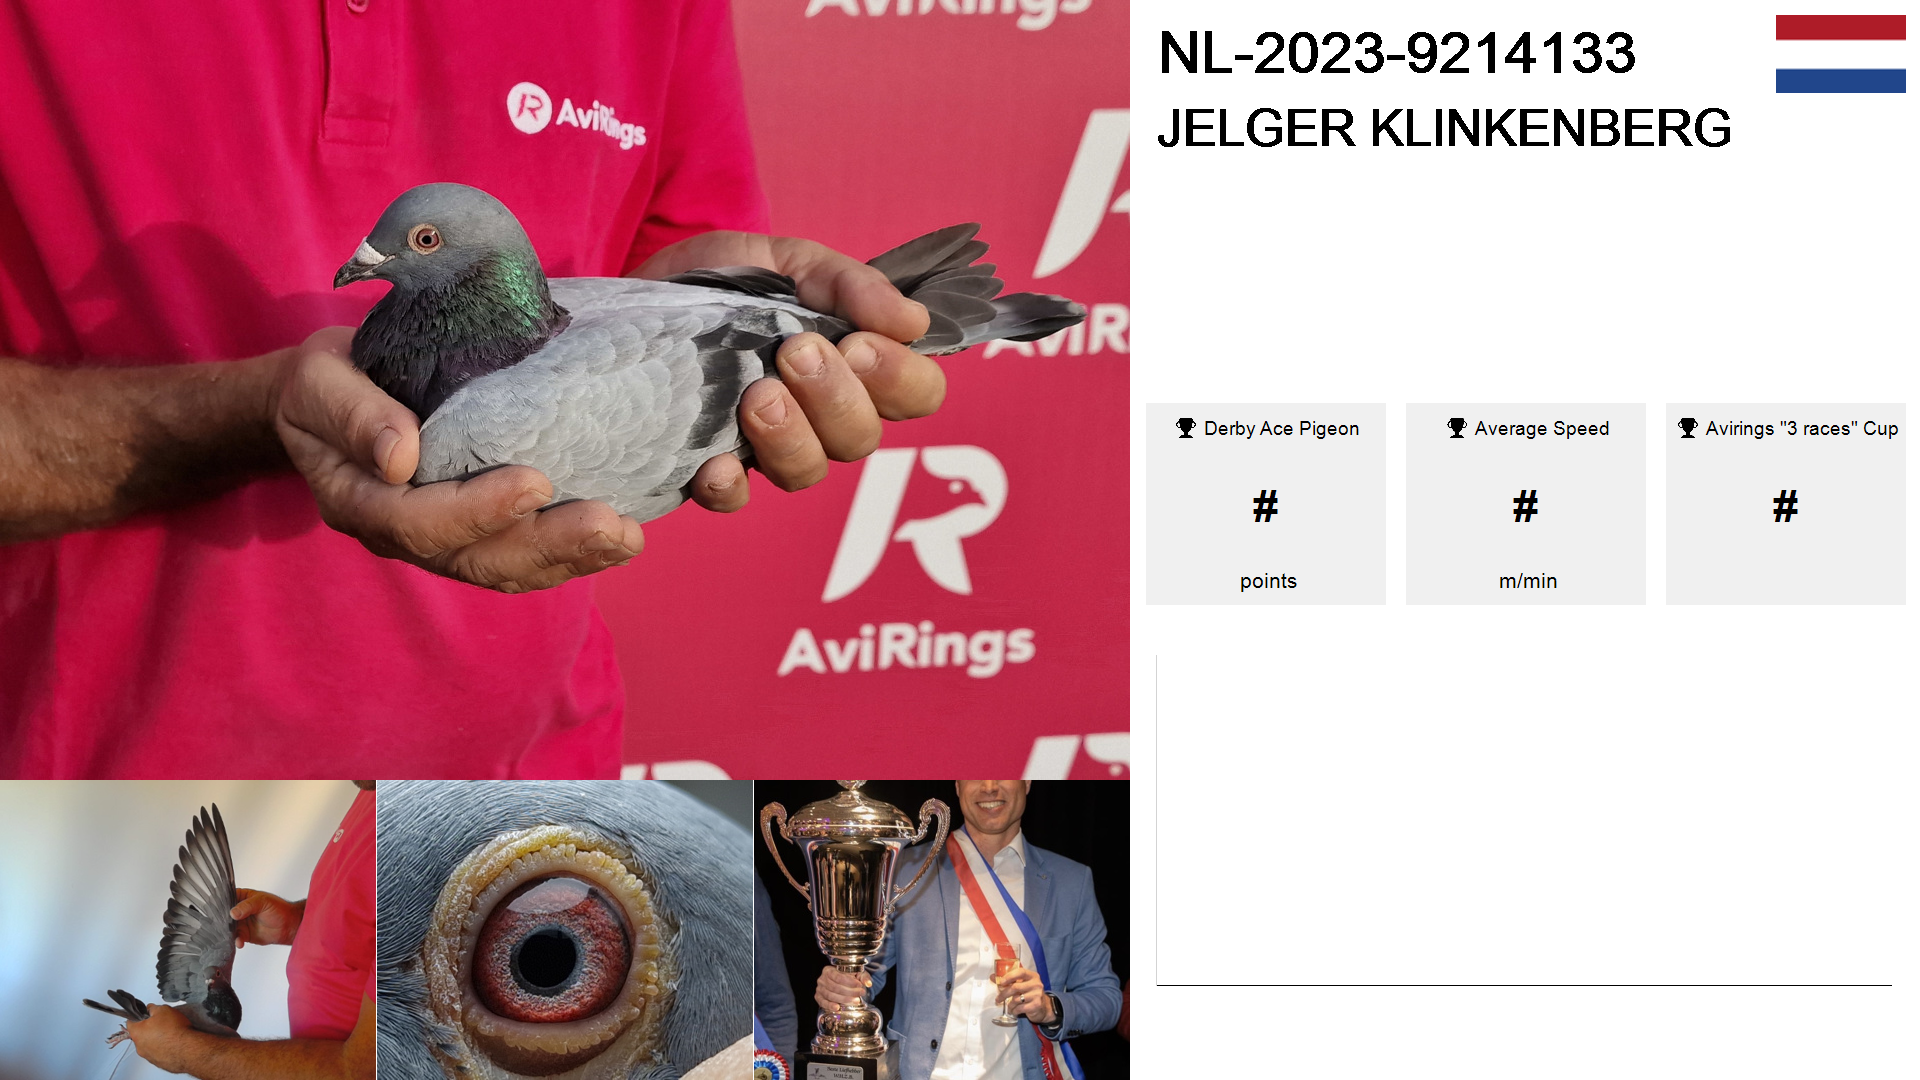 Pigeon summary image